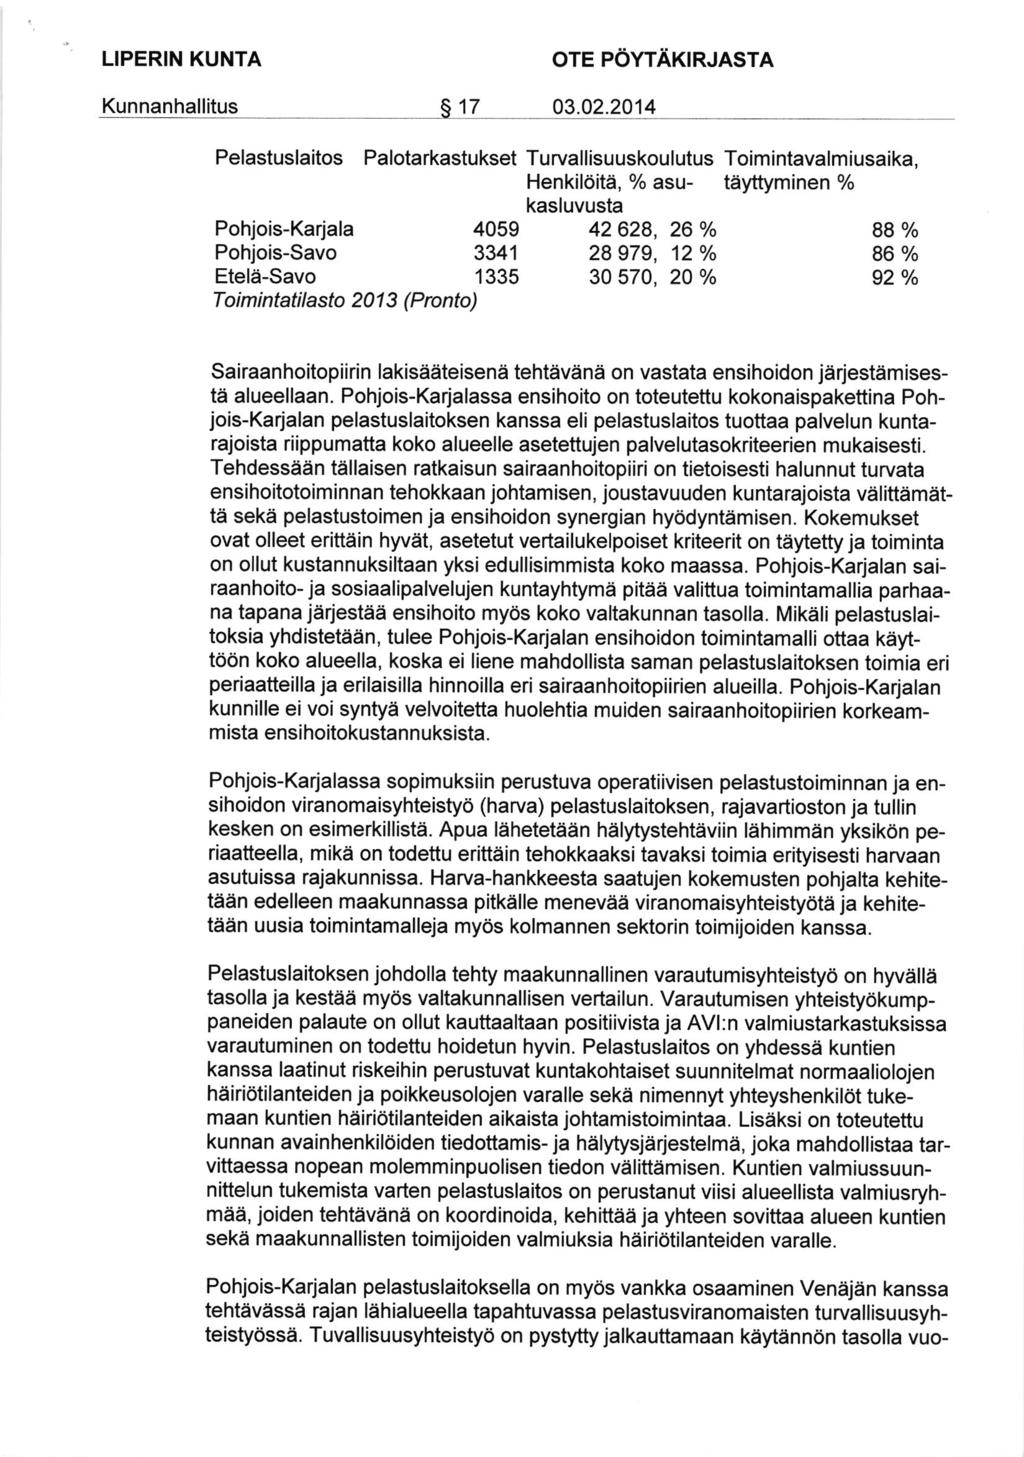 Pelastuslaitos Palotarkastukset Toimintavalmiusaika, tiyftyminen % Pohjois-Karjala Pohjois-Savo Etele-Savo Toimintatilasto 201 3 (Pronto) Sairaanhoitopiirin lakisddteisena tehtevana on vastata